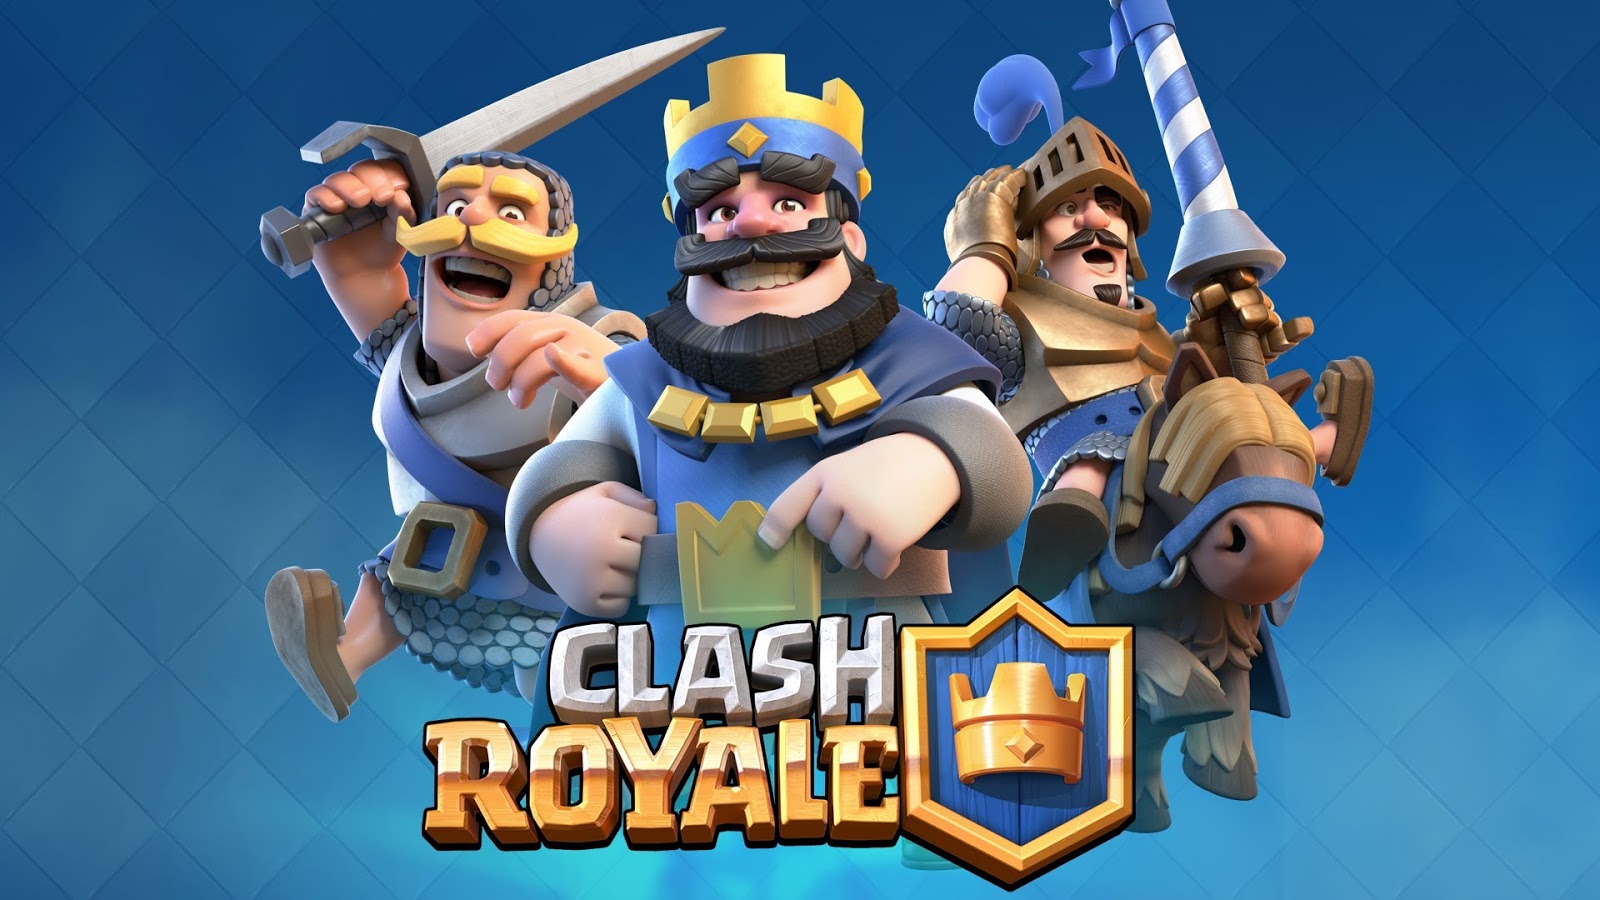 Download Gambar Clash Royale Hd Keren Lucu Terbaru